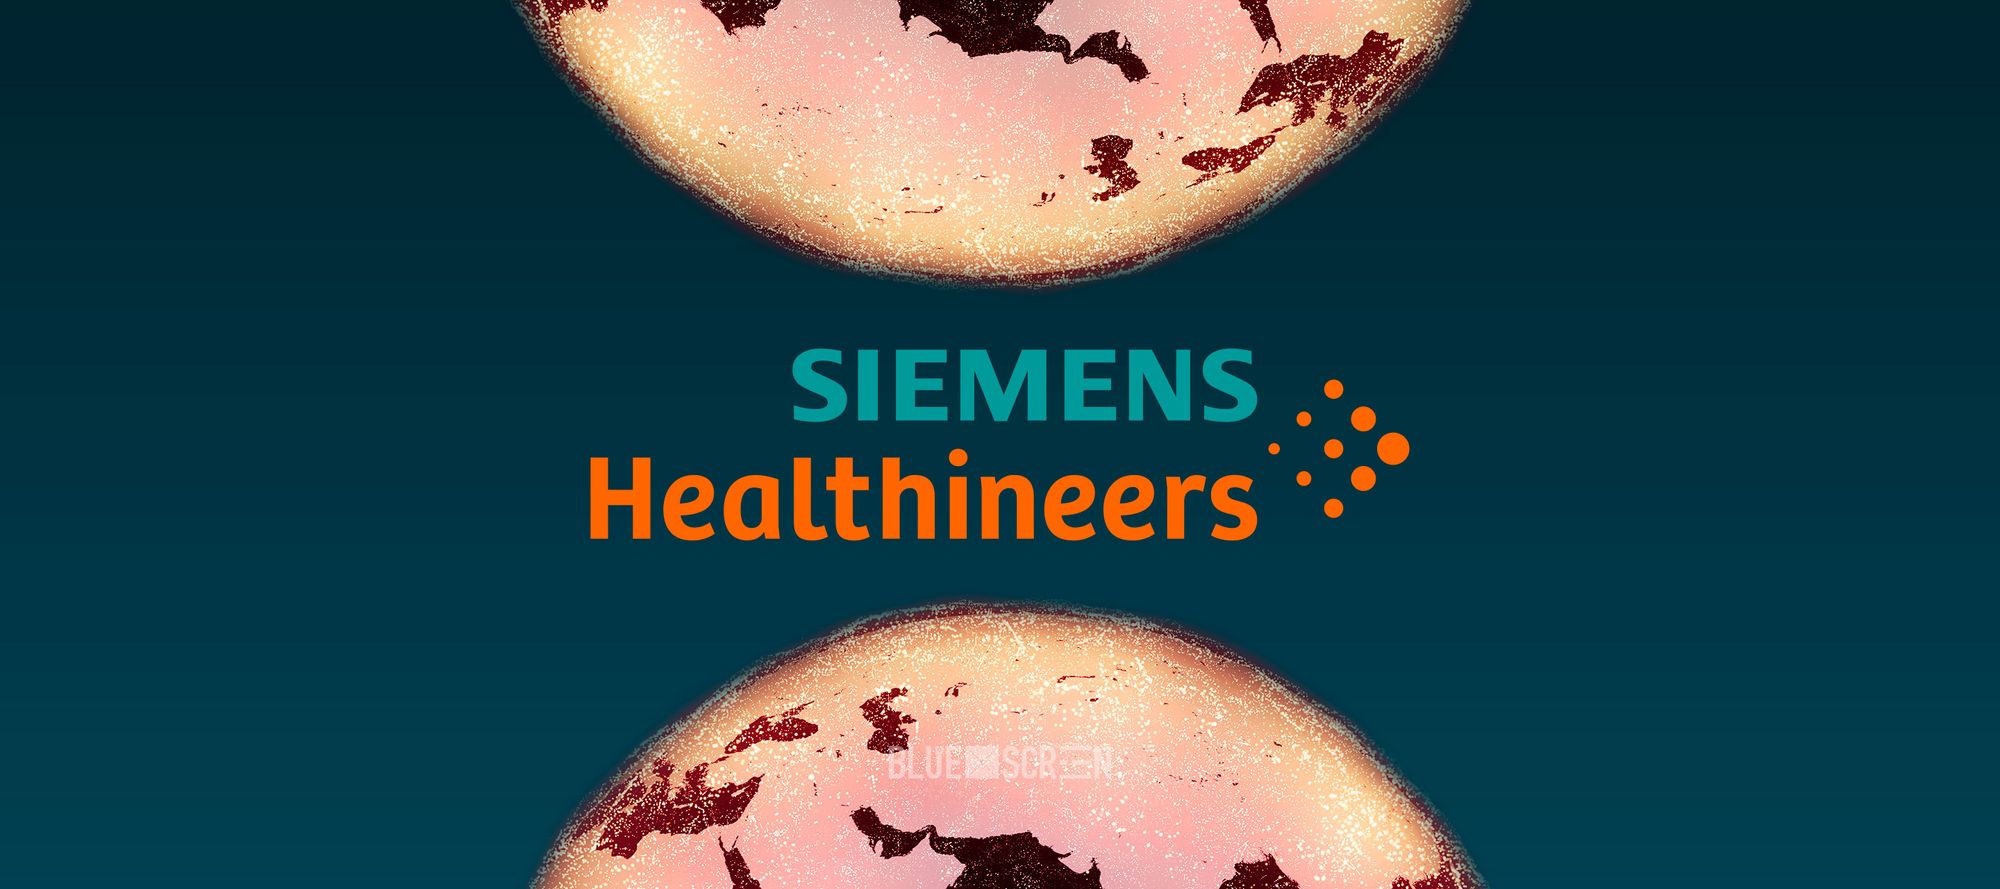 Казахстанский стартап Cerebra будет консультировать Siemens Healthineers